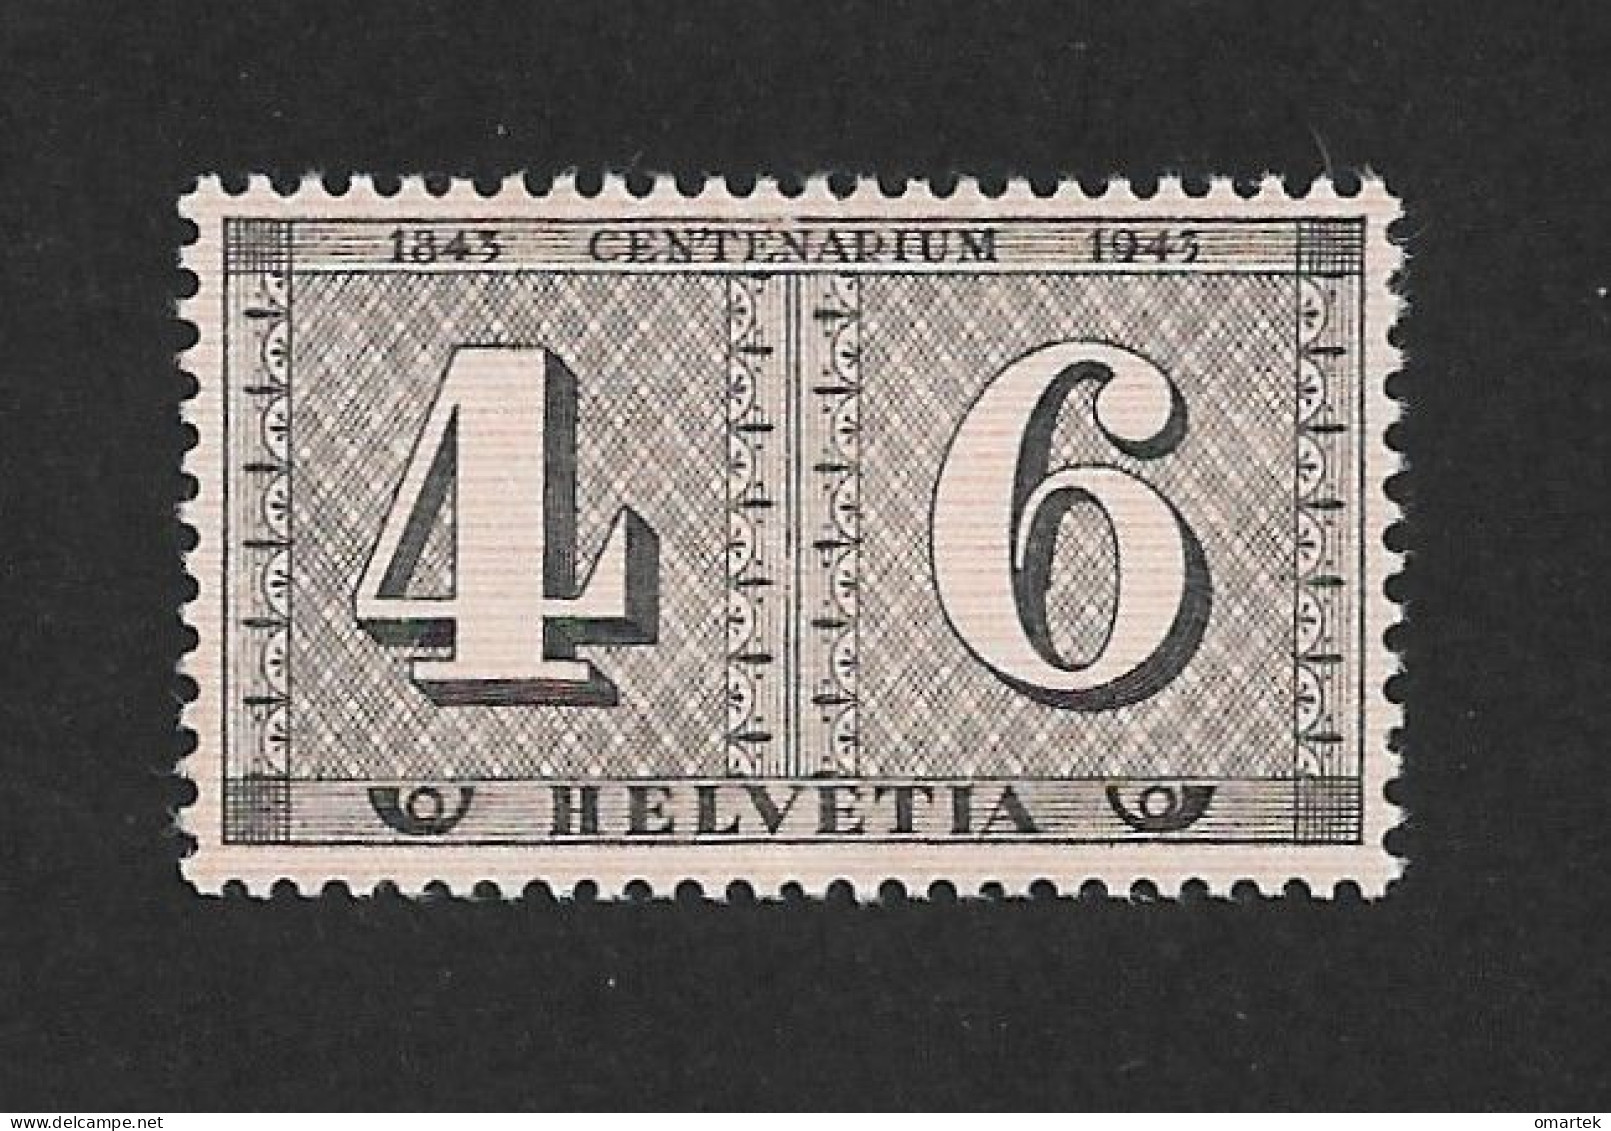 Schweiz Switzerland Helvetia 1943 MNH Mi 416 Sc 287 Zu 258 Yt 384 Stamp Jubilee.. - Nuovi